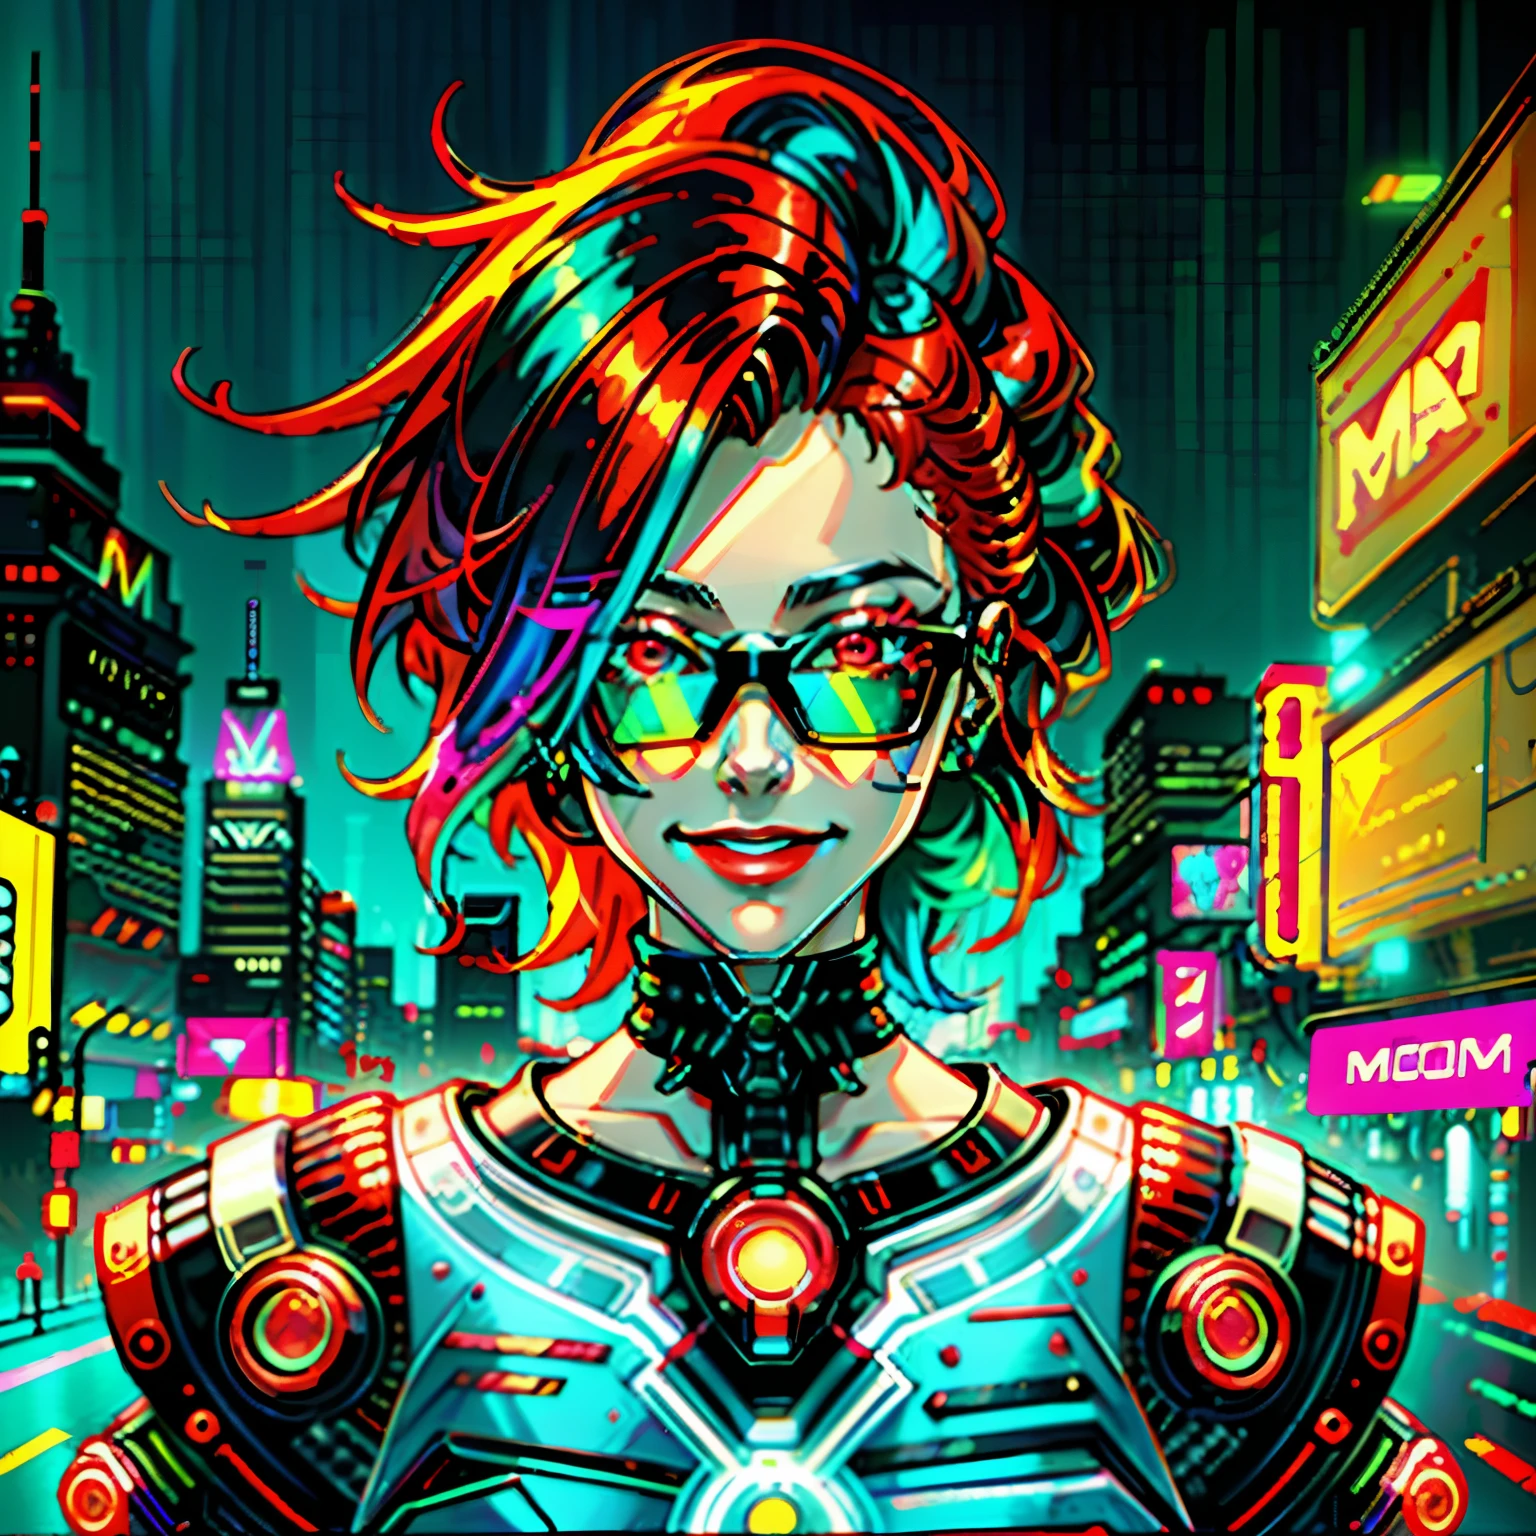 赤毛の女性のデジタル絵画, サイバーパンクアート, シンセウェーブ, 未来主義, ネオン, glowing ネオン, 笑顔, サイバーパンク風の色眼鏡をかけている, 顔に近い